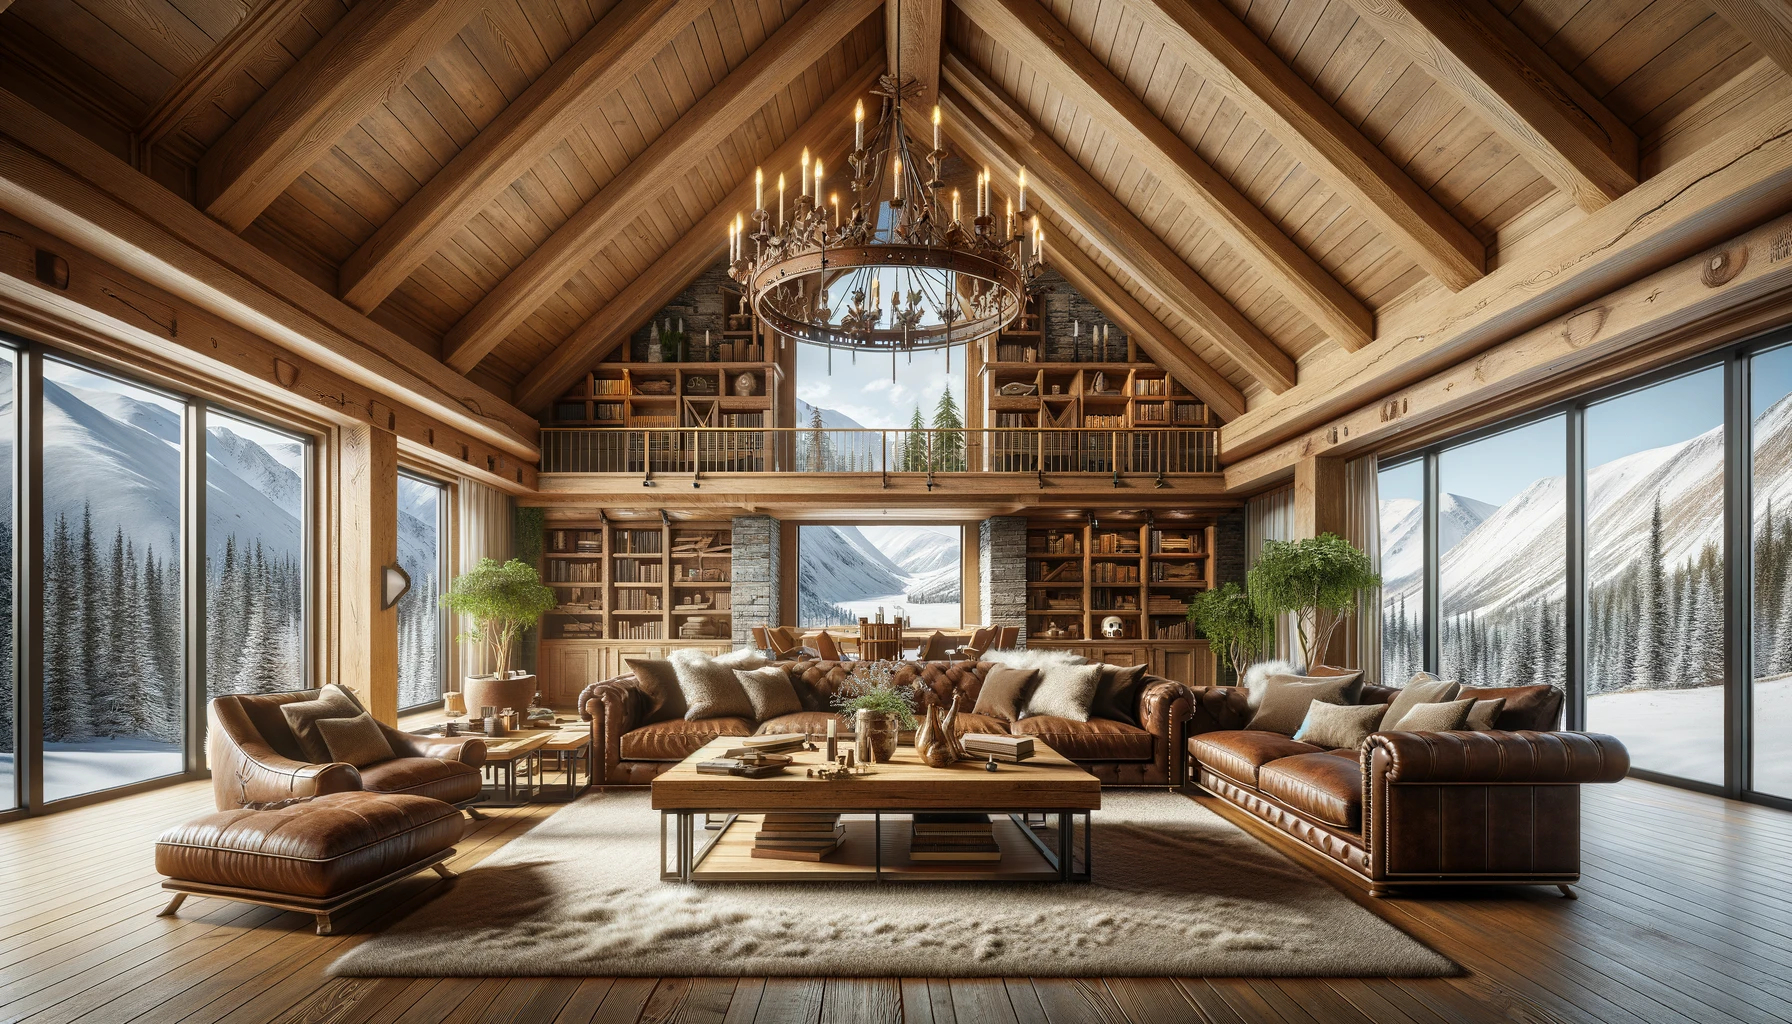 A cozy cabin interior.